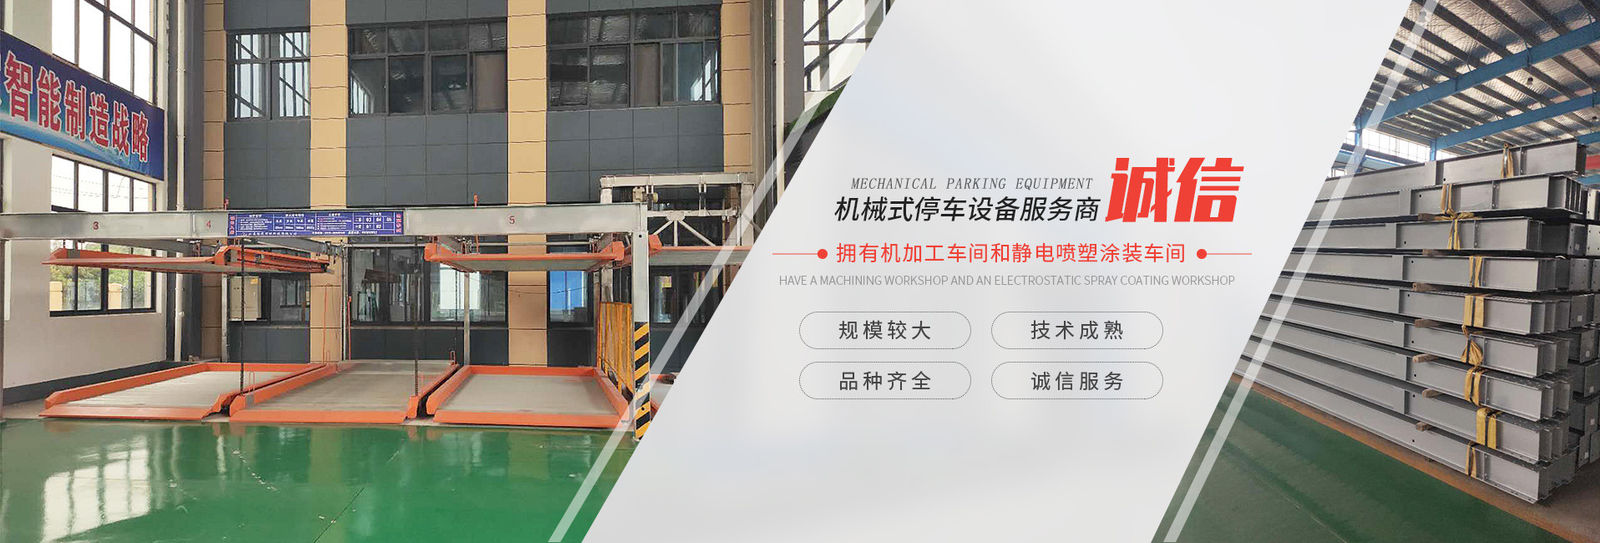 চীন Shanghai Changyue Automation Machinery Co., Ltd. সংস্থা প্রোফাইল